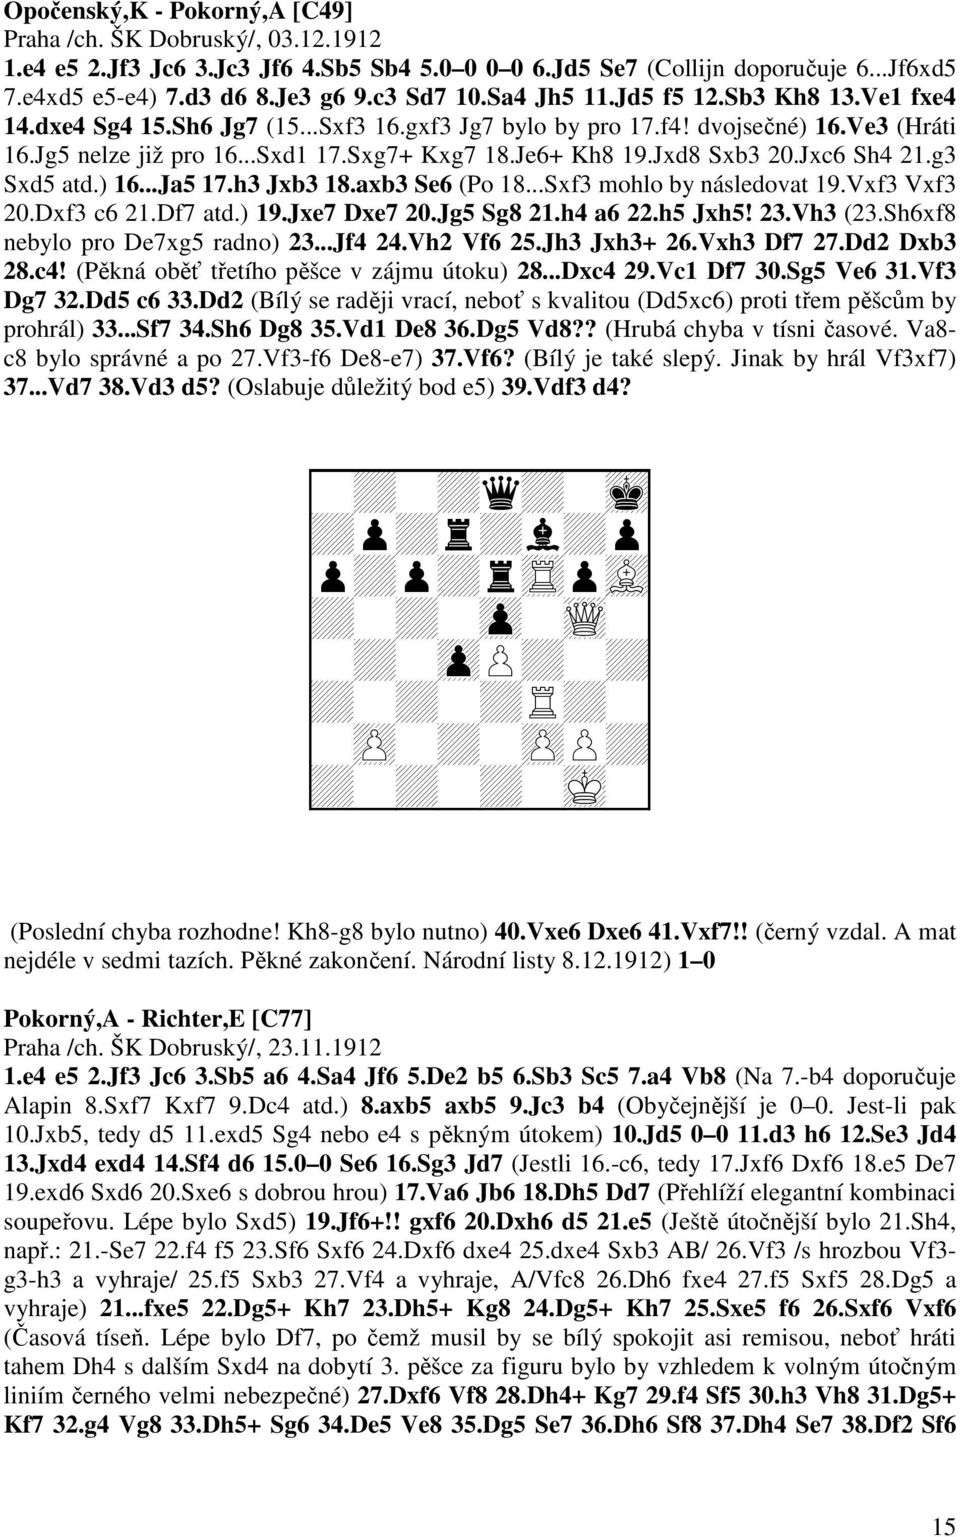 Jxd8 Sxb3 20.Jxc6 Sh4 21.g3 Sxd5 atd.) 16...Ja5 17.h3 Jxb3 18.axb3 Se6 (Po 18...Sxf3 mohlo by následovat 19.Vxf3 Vxf3 20.Dxf3 c6 21.Df7 atd.) 19.Jxe7 Dxe7 20.Jg5 Sg8 21.h4 a6 22.h5 Jxh5! 23.Vh3 (23.